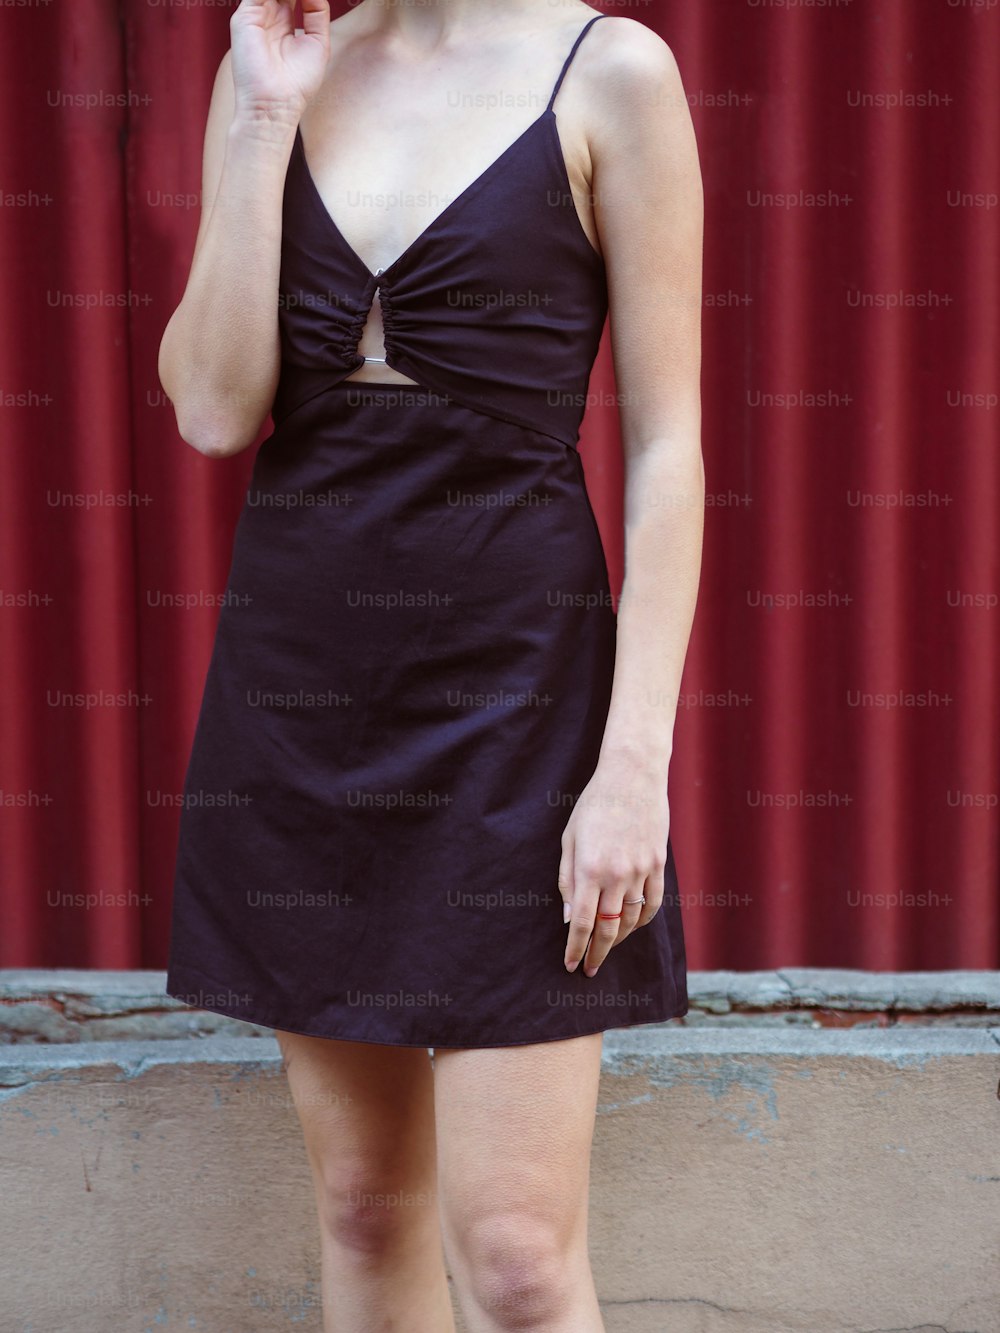 a woman wearing a black dress